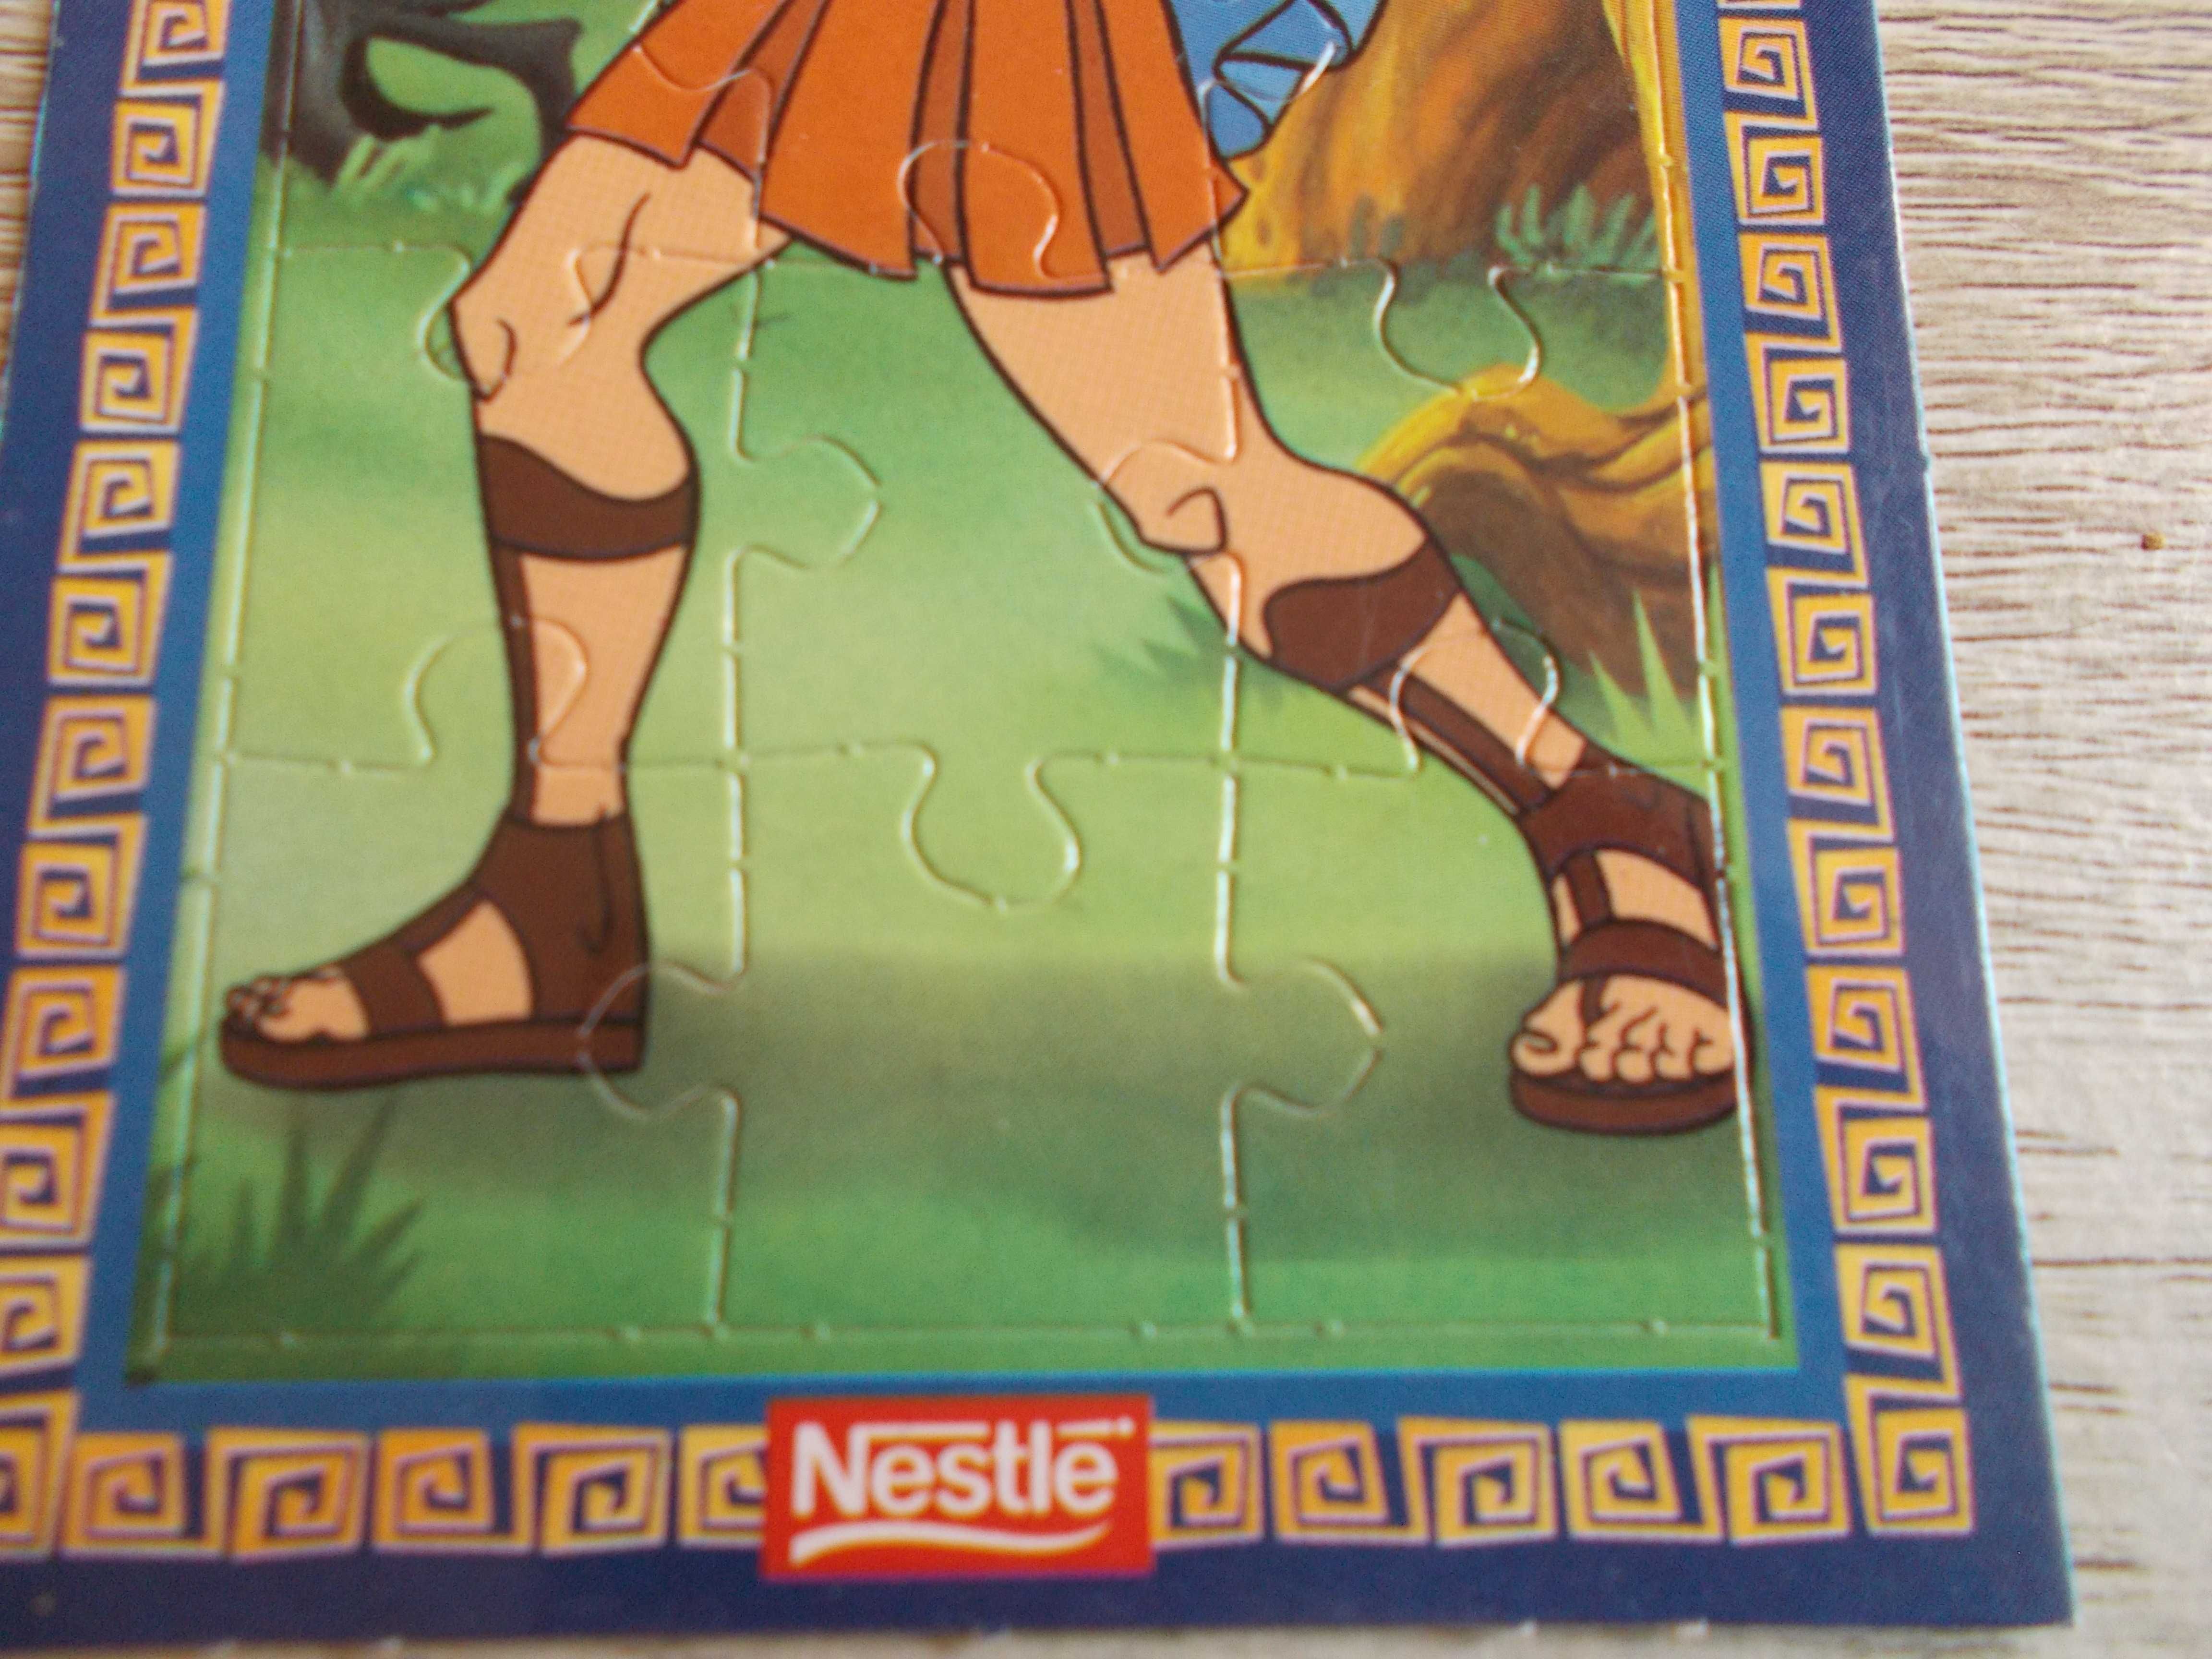 puzzle da Nestlé com o Hércules